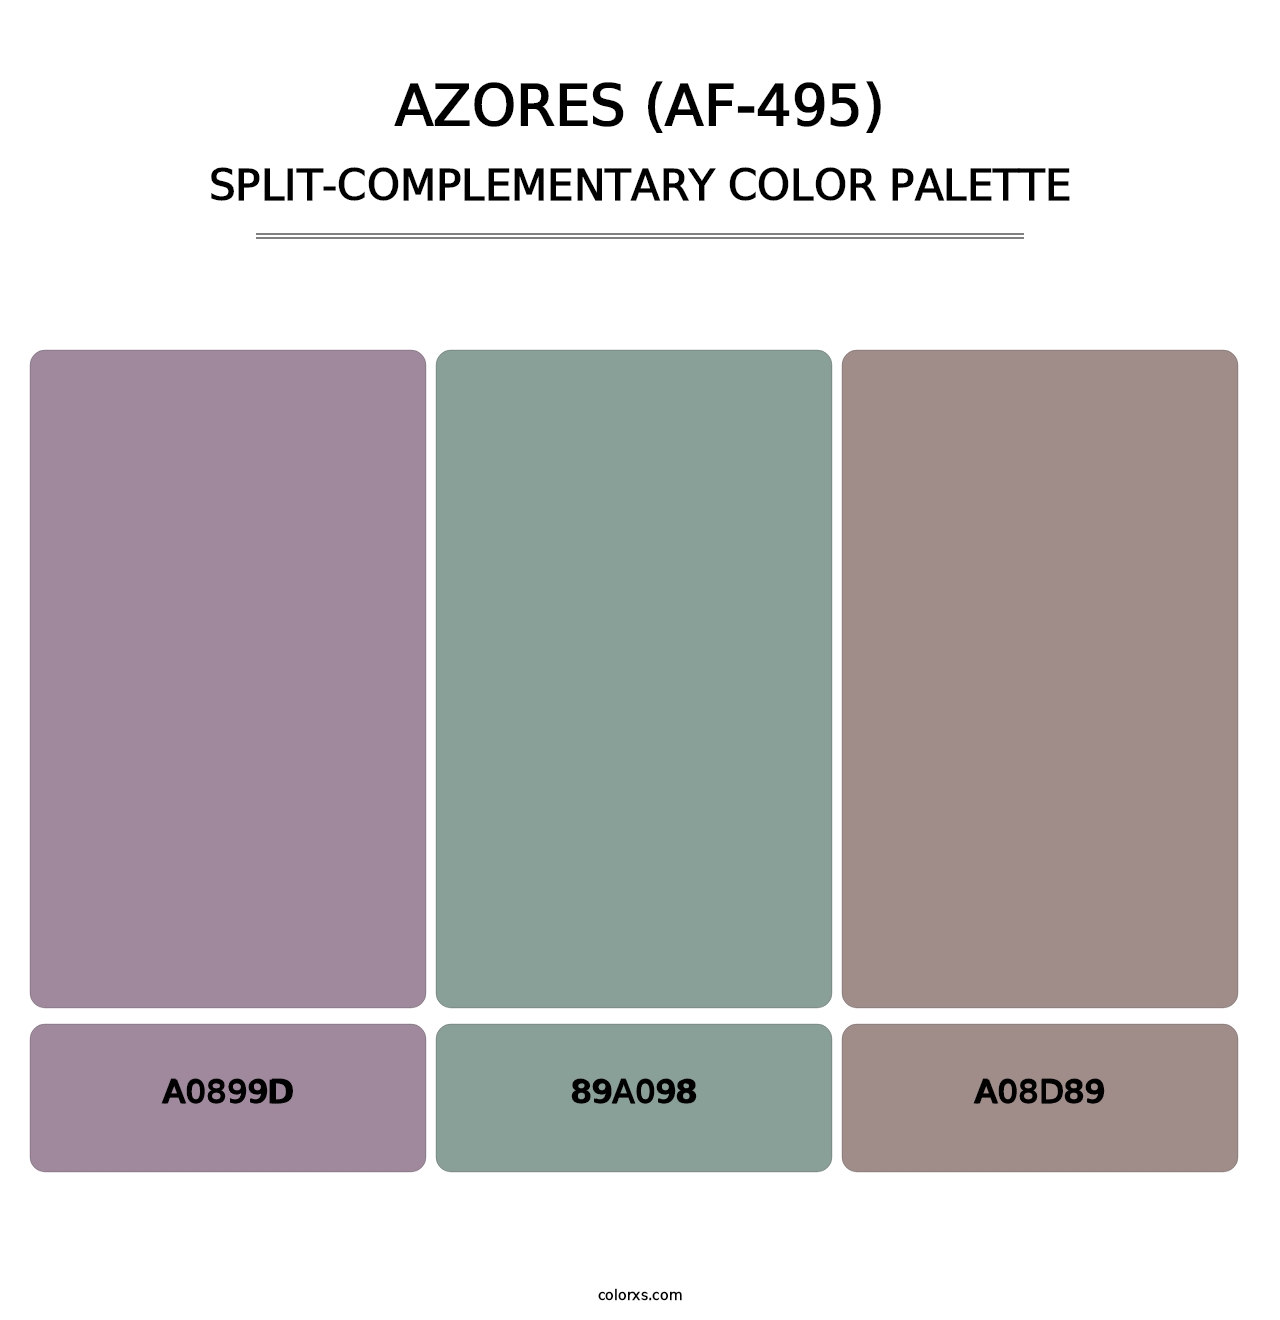 Azores (AF-495) - Split-Complementary Color Palette